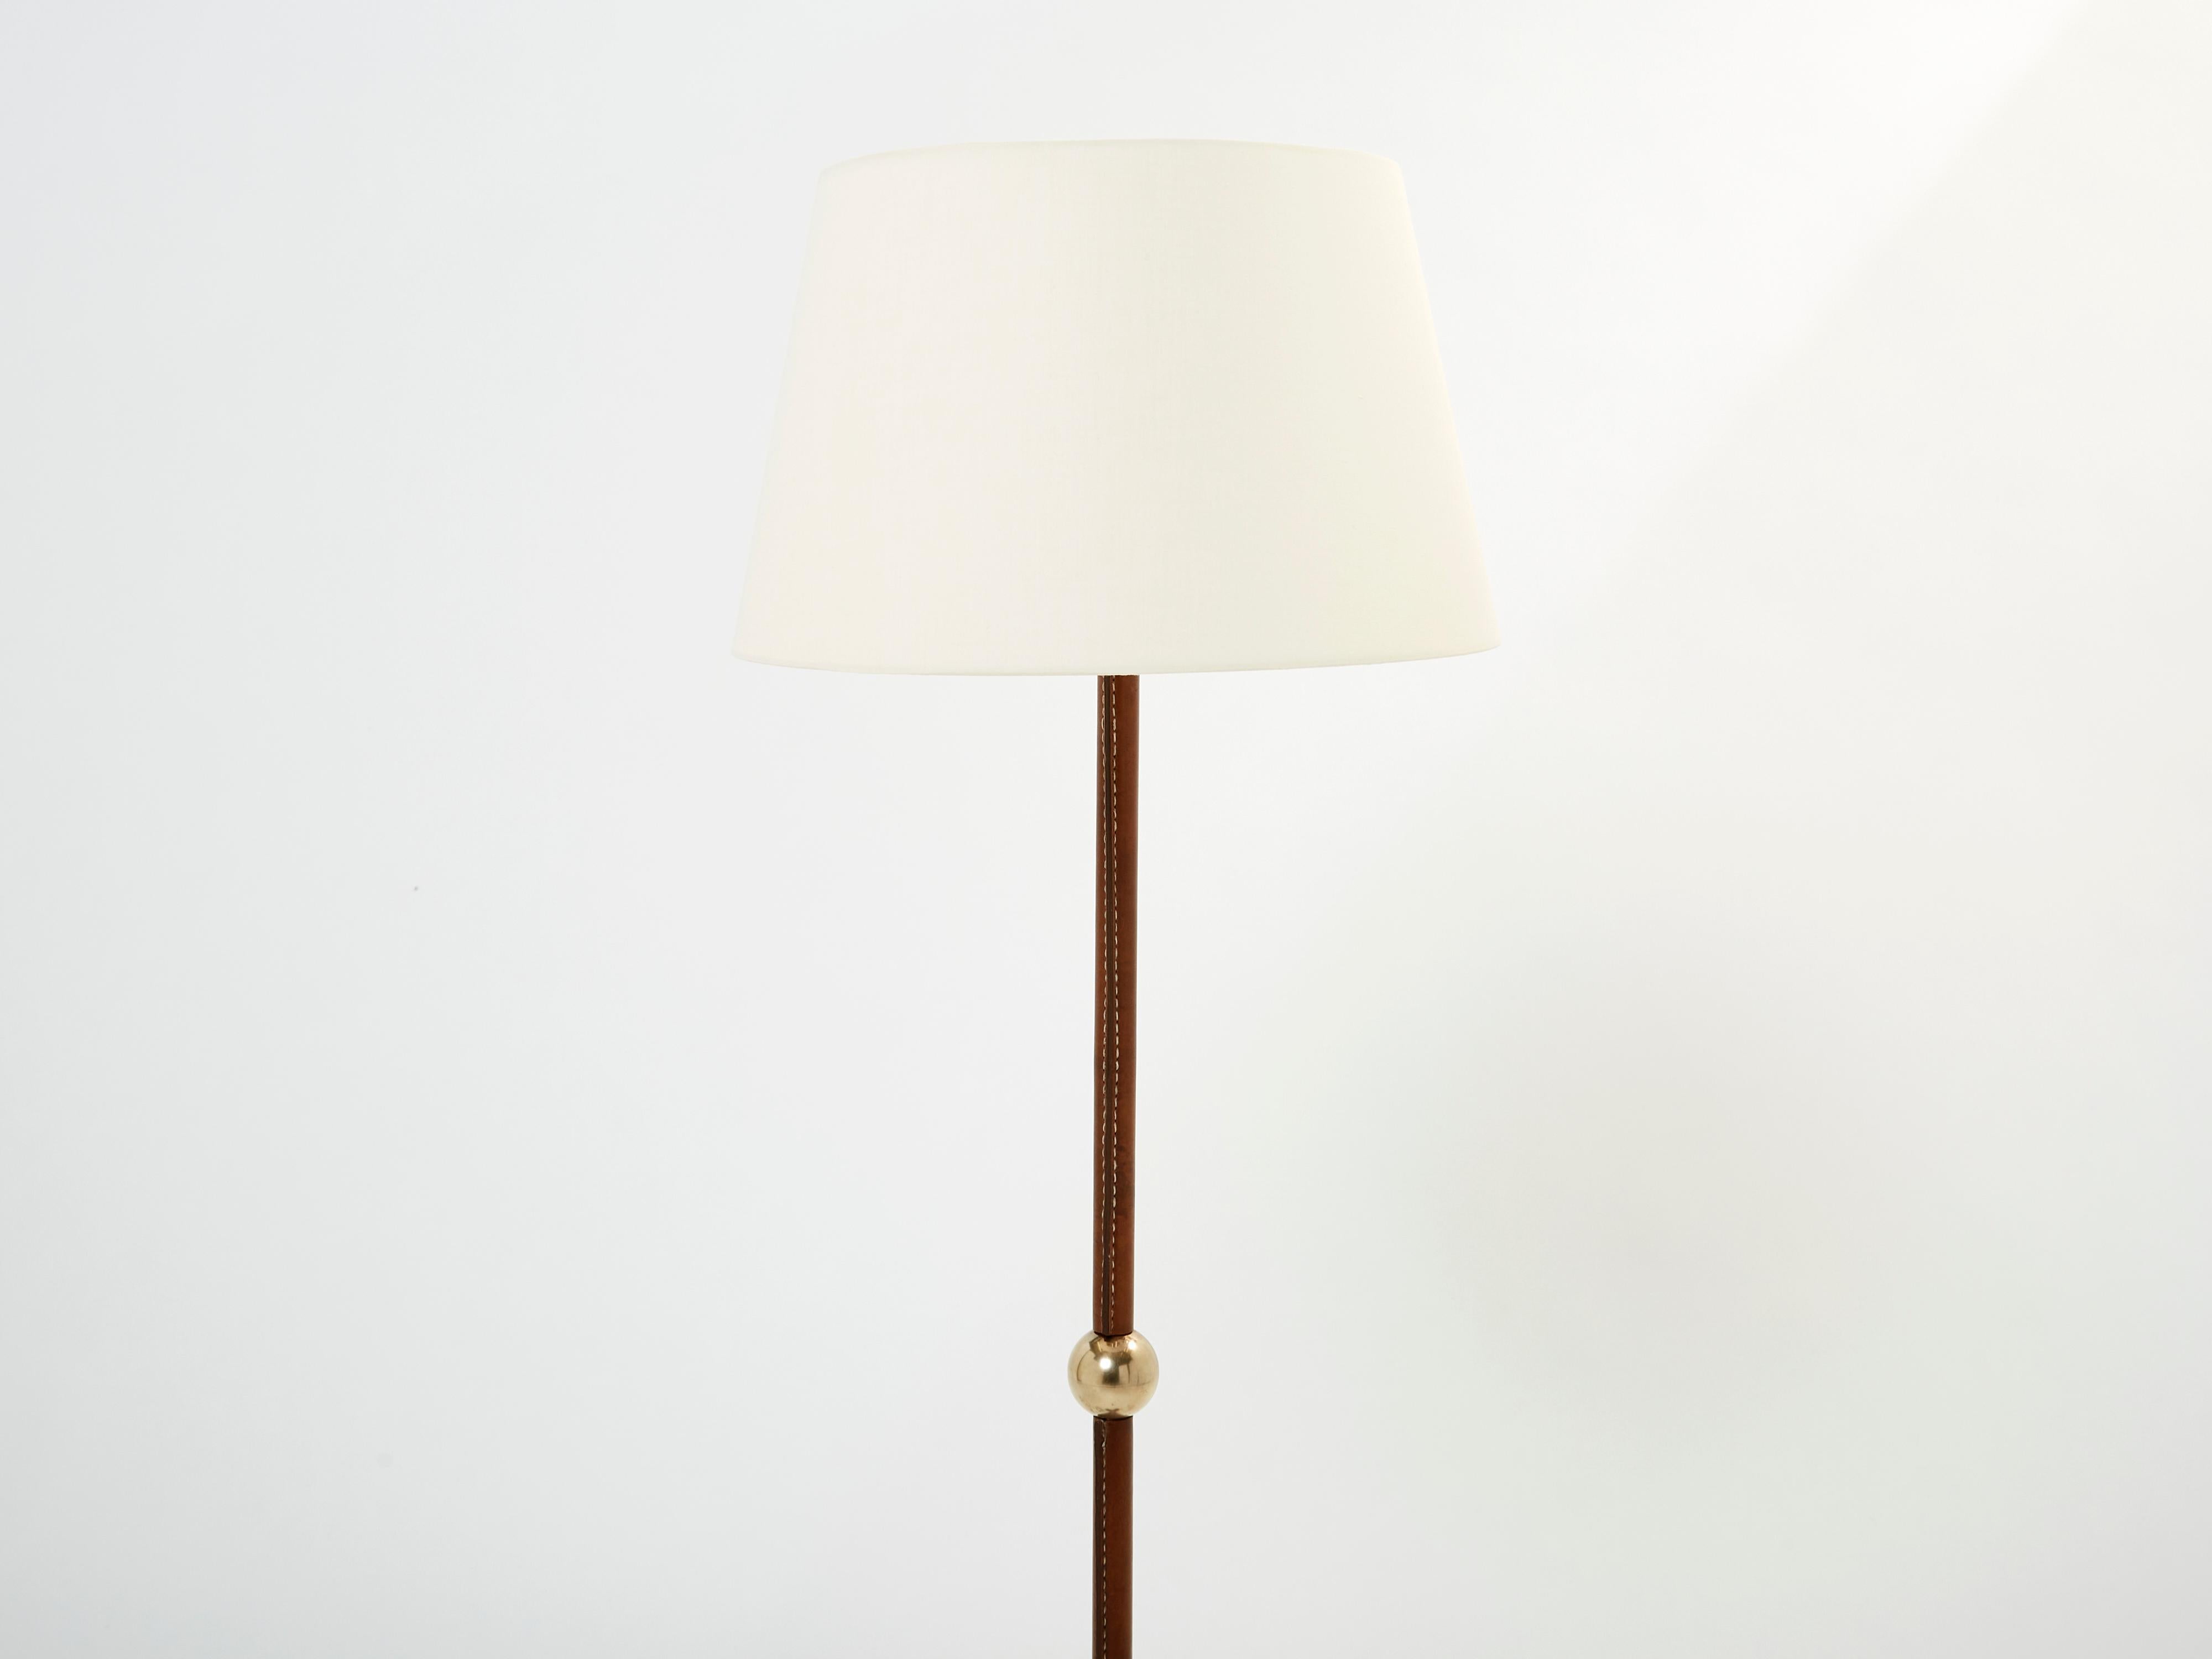 Cet élégant lampadaire de Jacques Adnet ne manquera pas d'ajouter un élément de modernisme français à n'importe quelle pièce de votre maison. Il a été conçu et produit par Jacques Adnet dans les années 1950. Avec une structure en cuir marron piqué